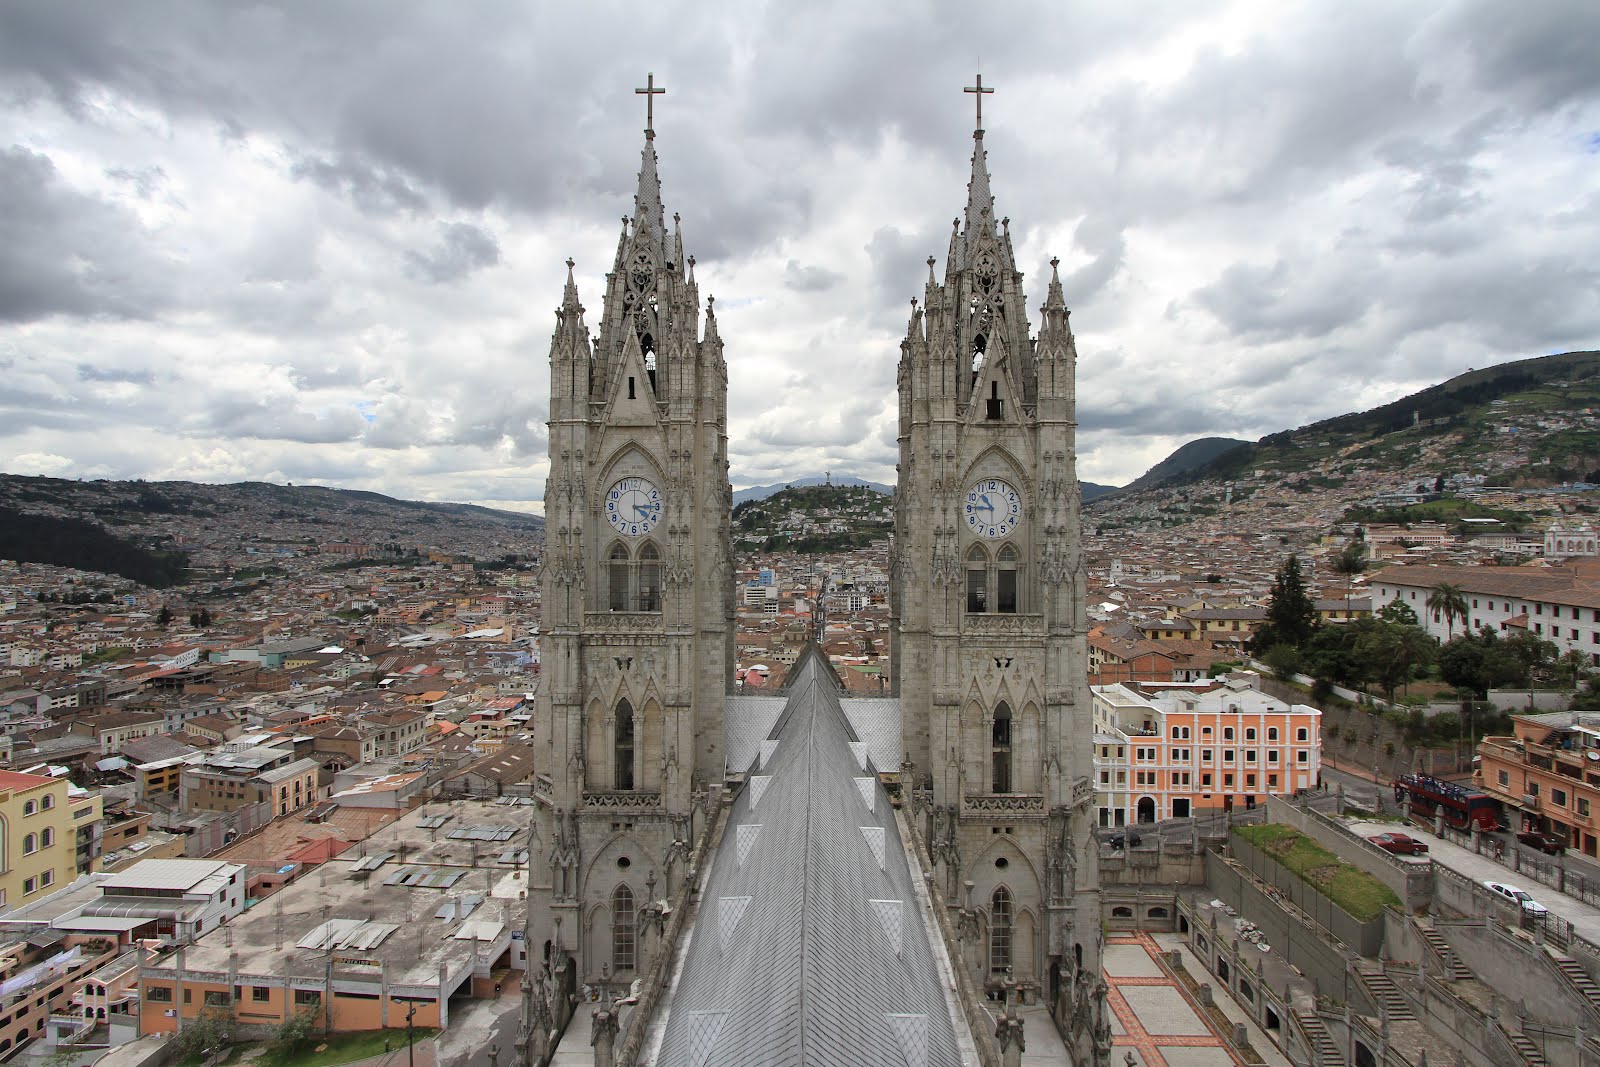 Ecuador Quito : Quito, officially san francisco de quito, is the